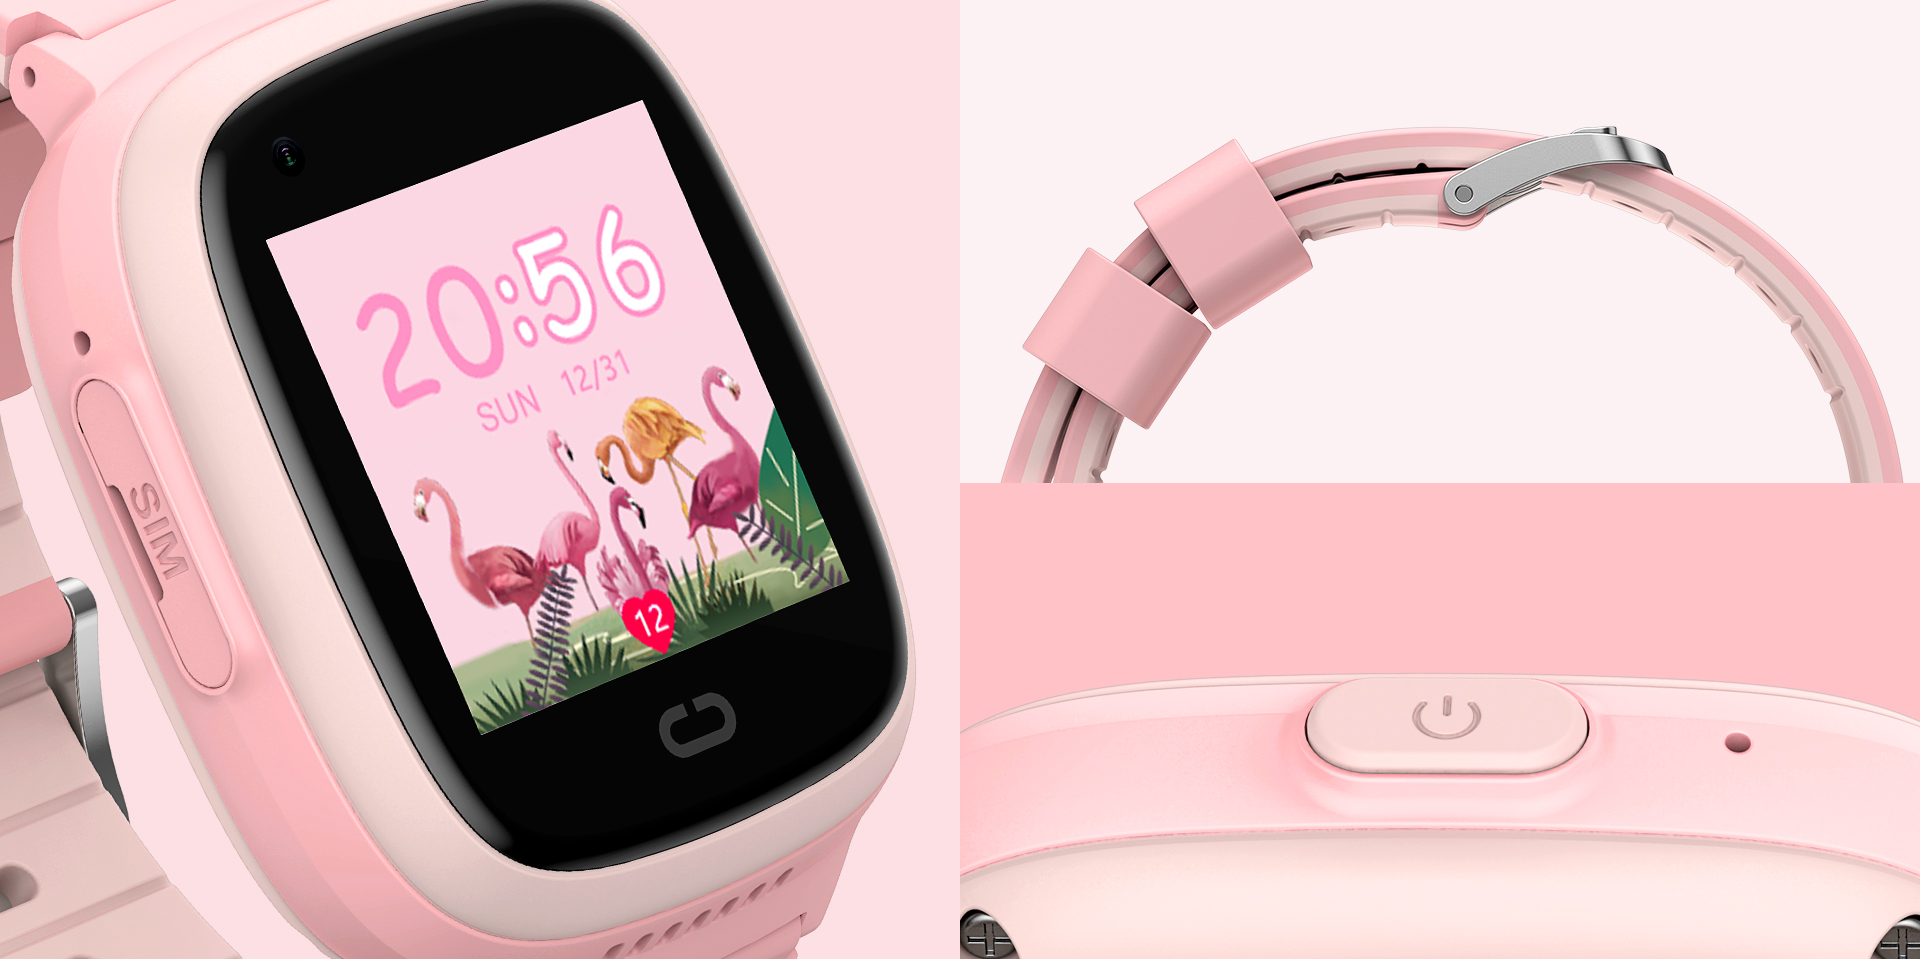 Ρολόι Smart - Havit KW11 (Pink)